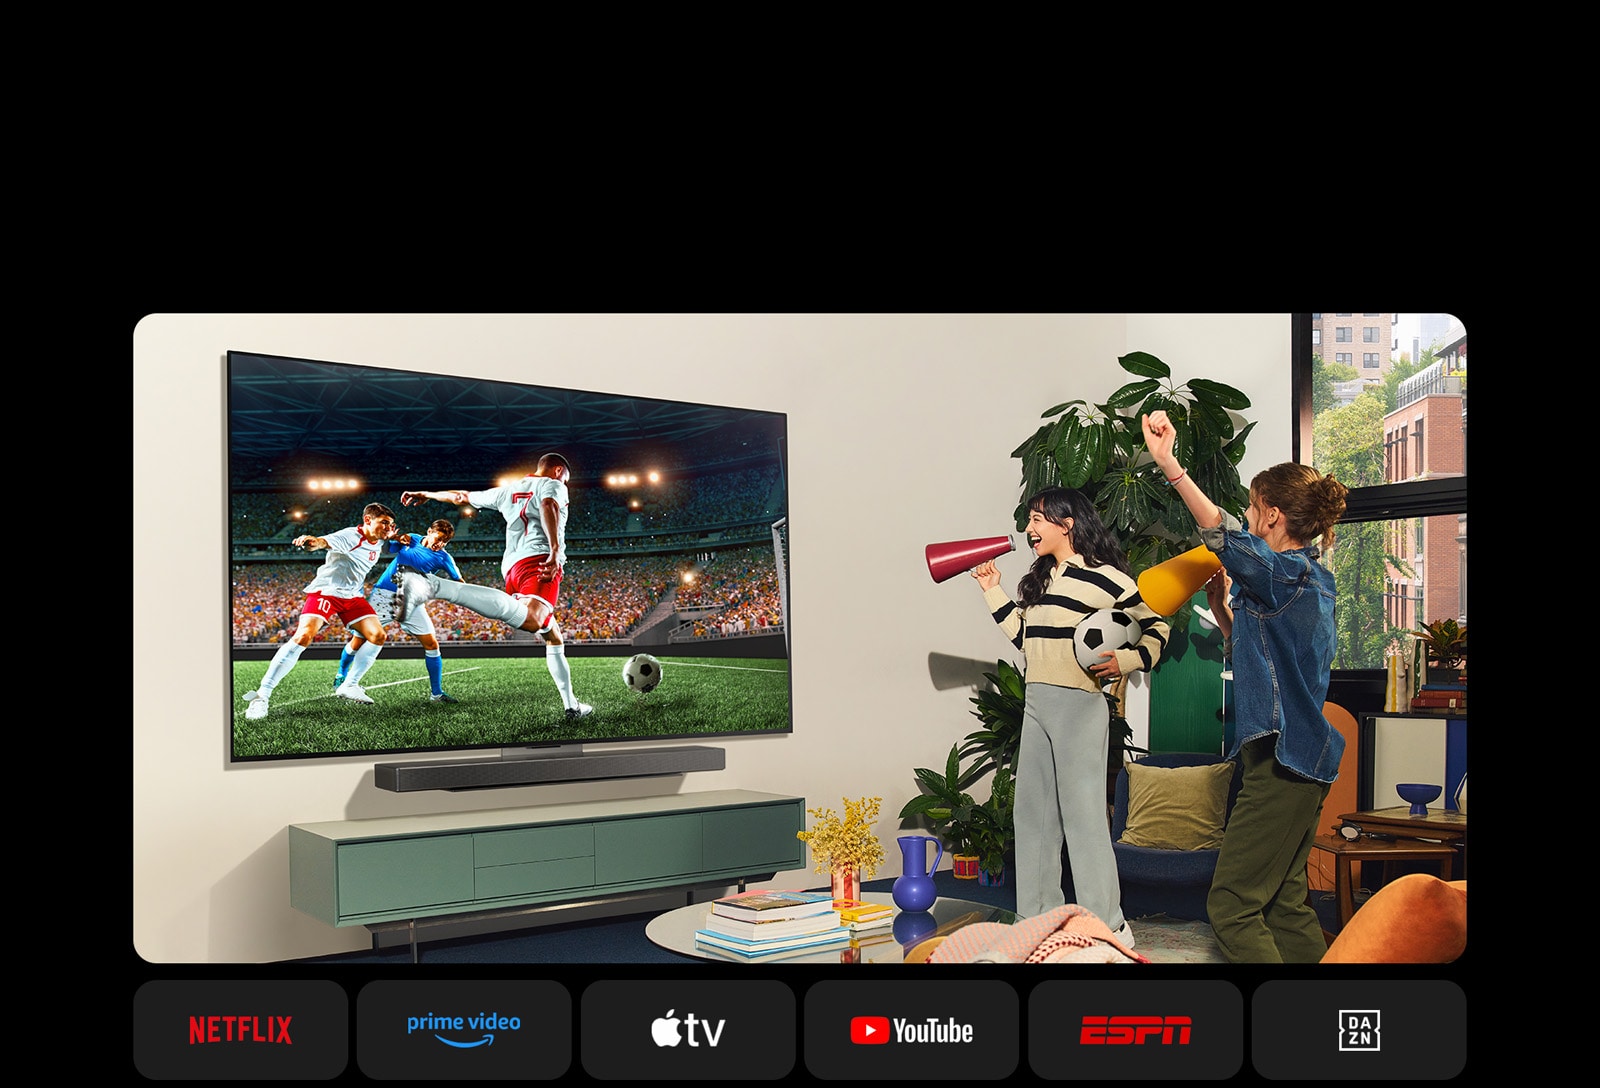 שתי נשים צופות במשחק כדורגל בחלל מגורים נעים. אישה אחת מחזיקה כדורגל ושתיהן מעודדות את קבוצתן במגפונים בצבע צהוב ואדום. סמלי הלוגו הבאים מוצגים מתחת. Netflix, ‏Amazon, ‏Prime Video, ‏Apple TV, ‏YouTube, ‏ESPN ו-DAZN.